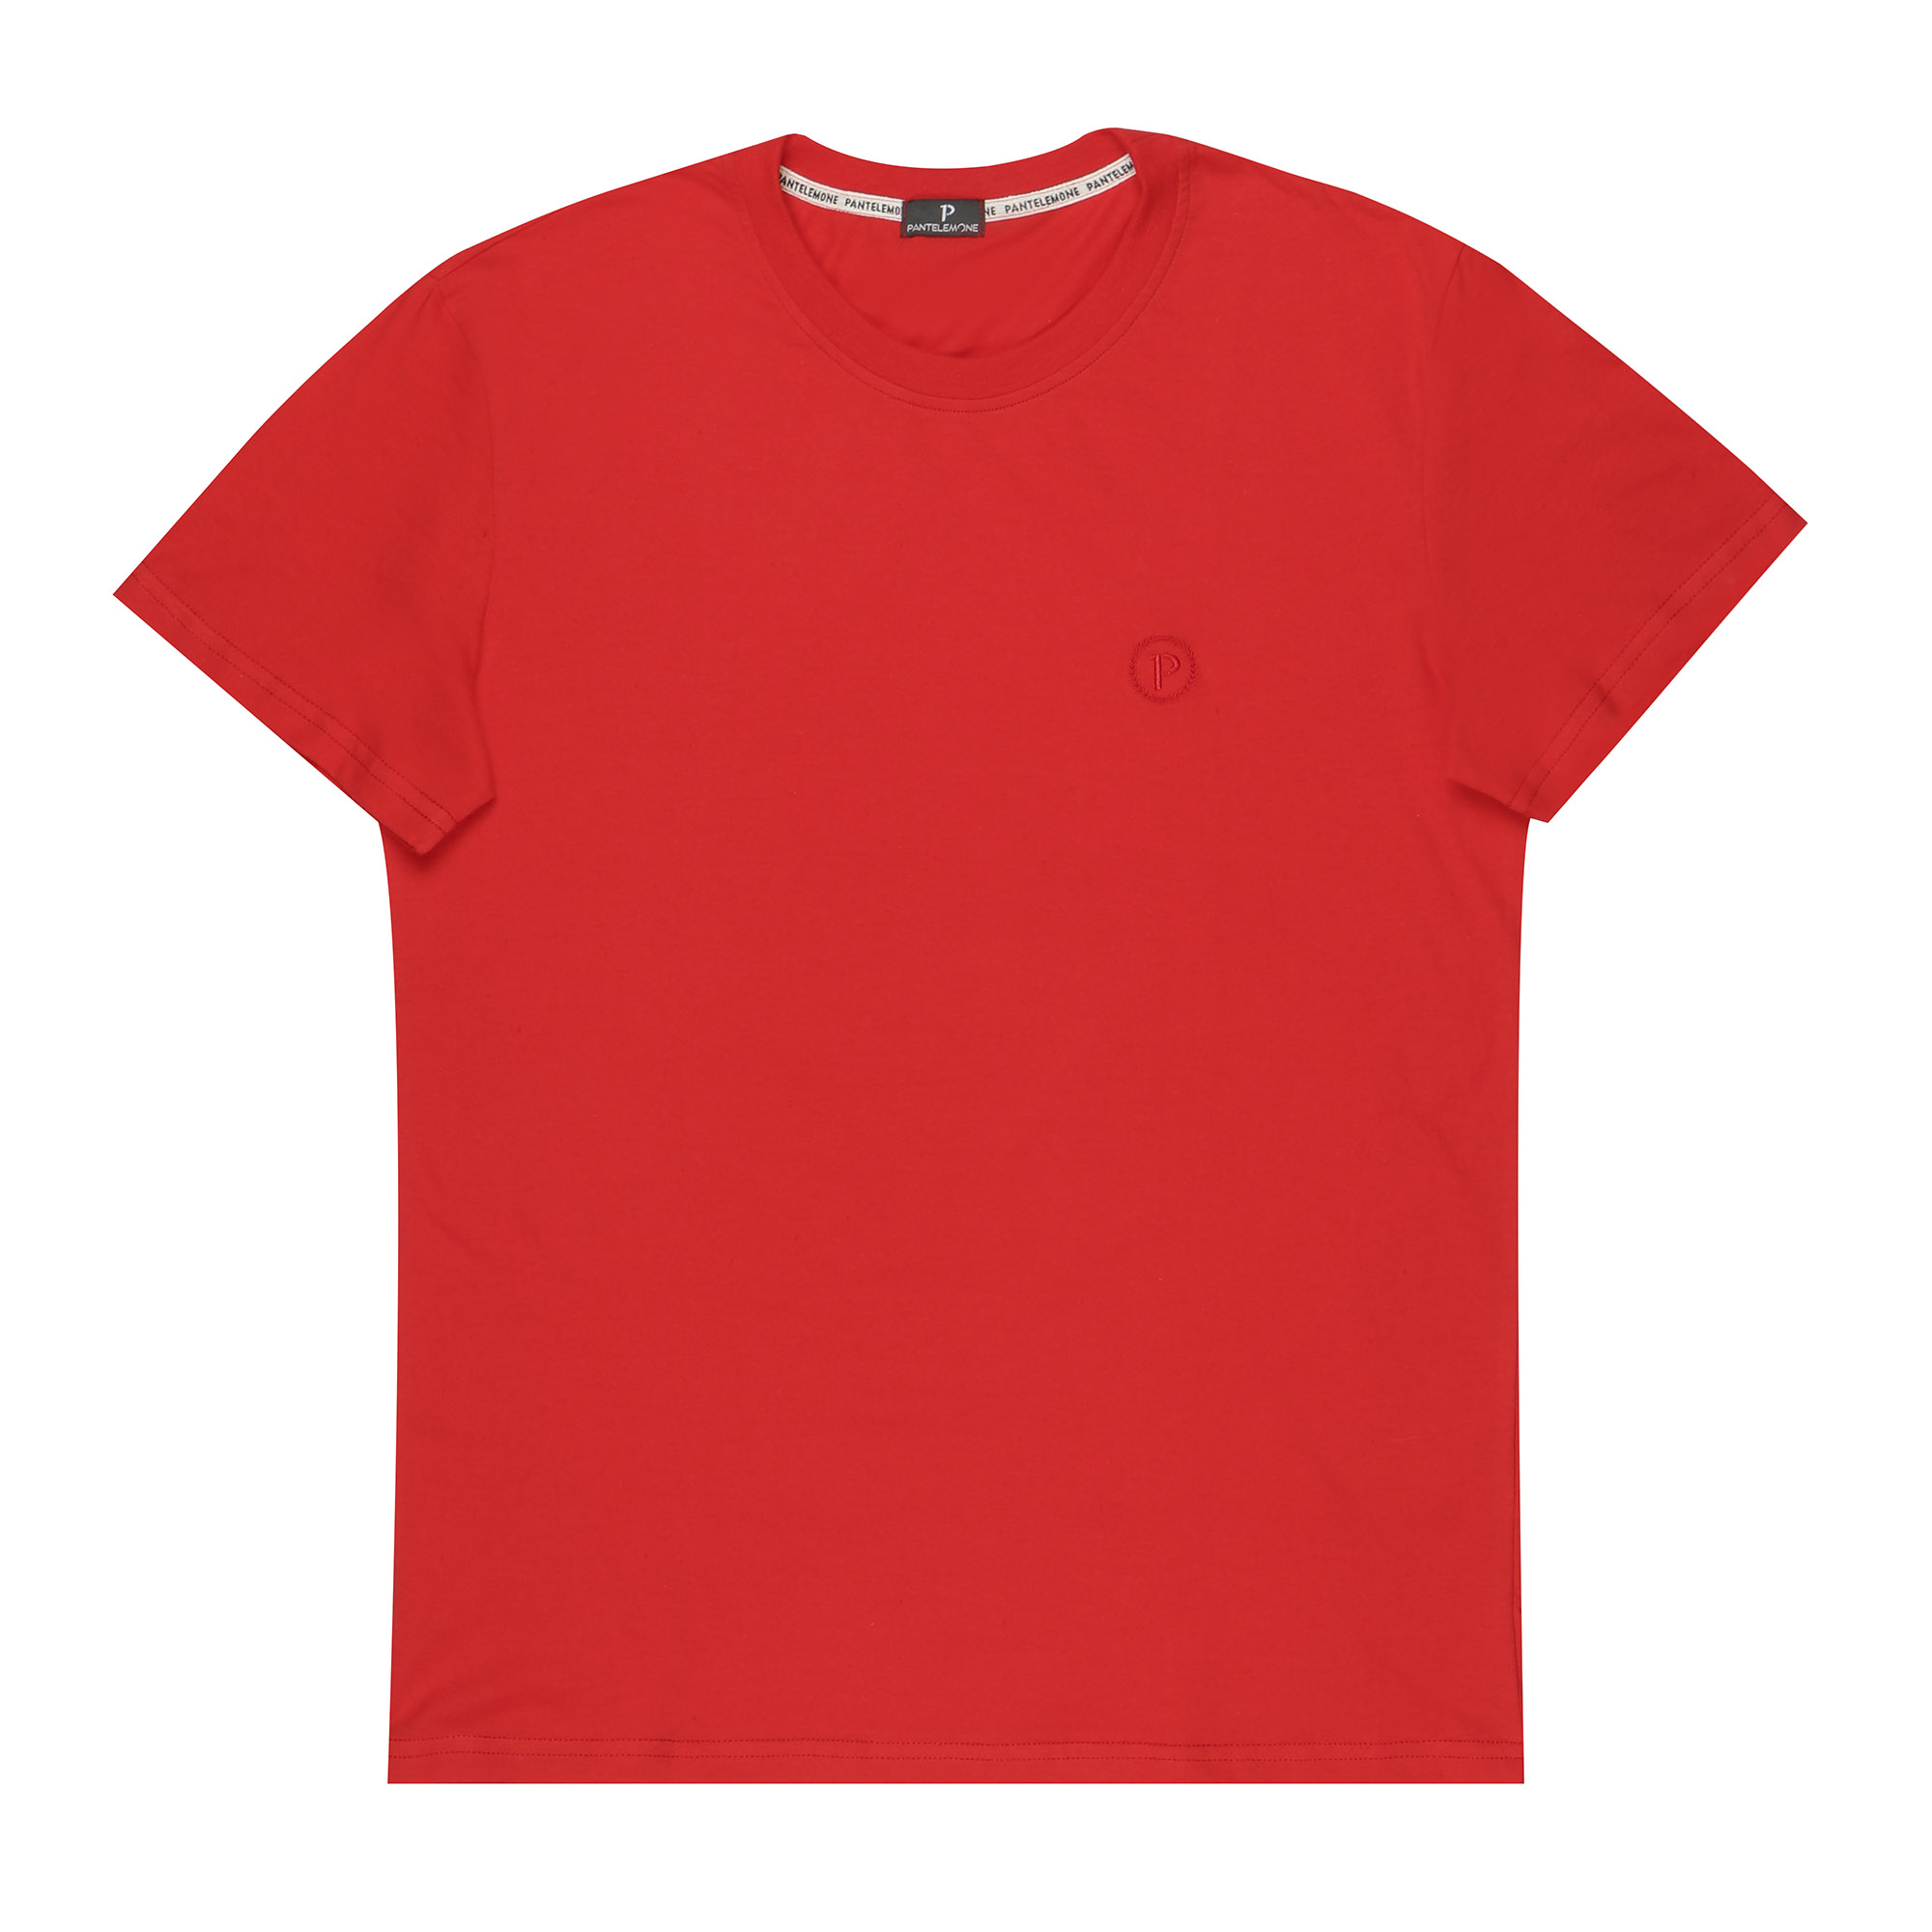 Мужская футболка Pantelemone MF-913 52 красная, цвет красный, размер 52 - фото 1